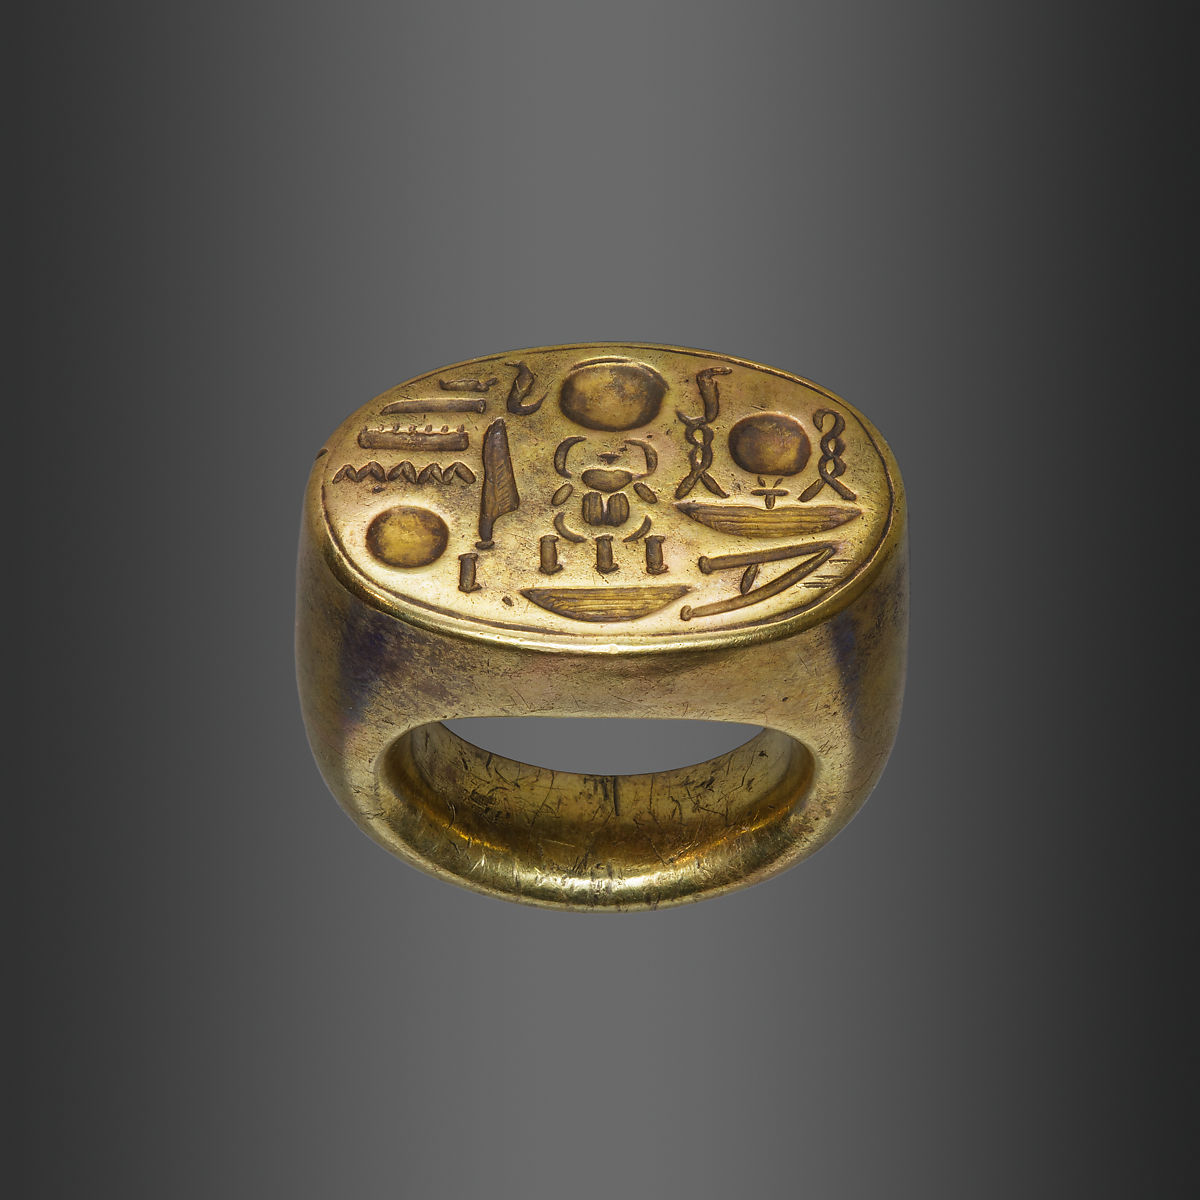 خاتم الملك توت عنخ آمون، موجود حاليا بمتحف متروبوليتان بنيويورك